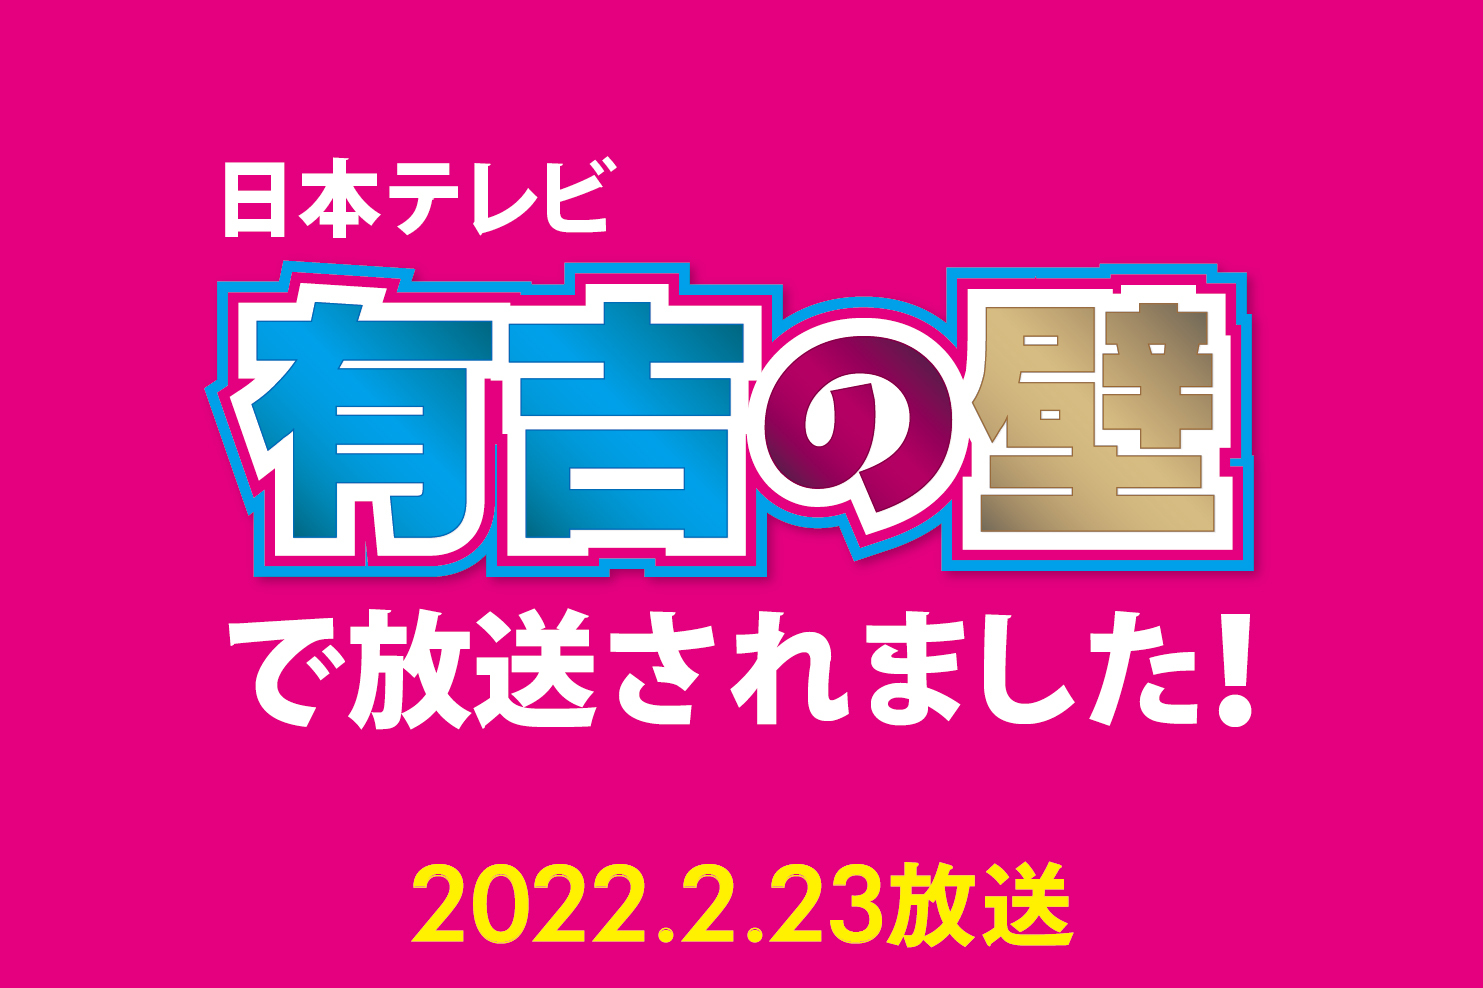 日本テレビ「有吉の壁」in 横浜 2時間SPで横浜大世界全館が放送されました！